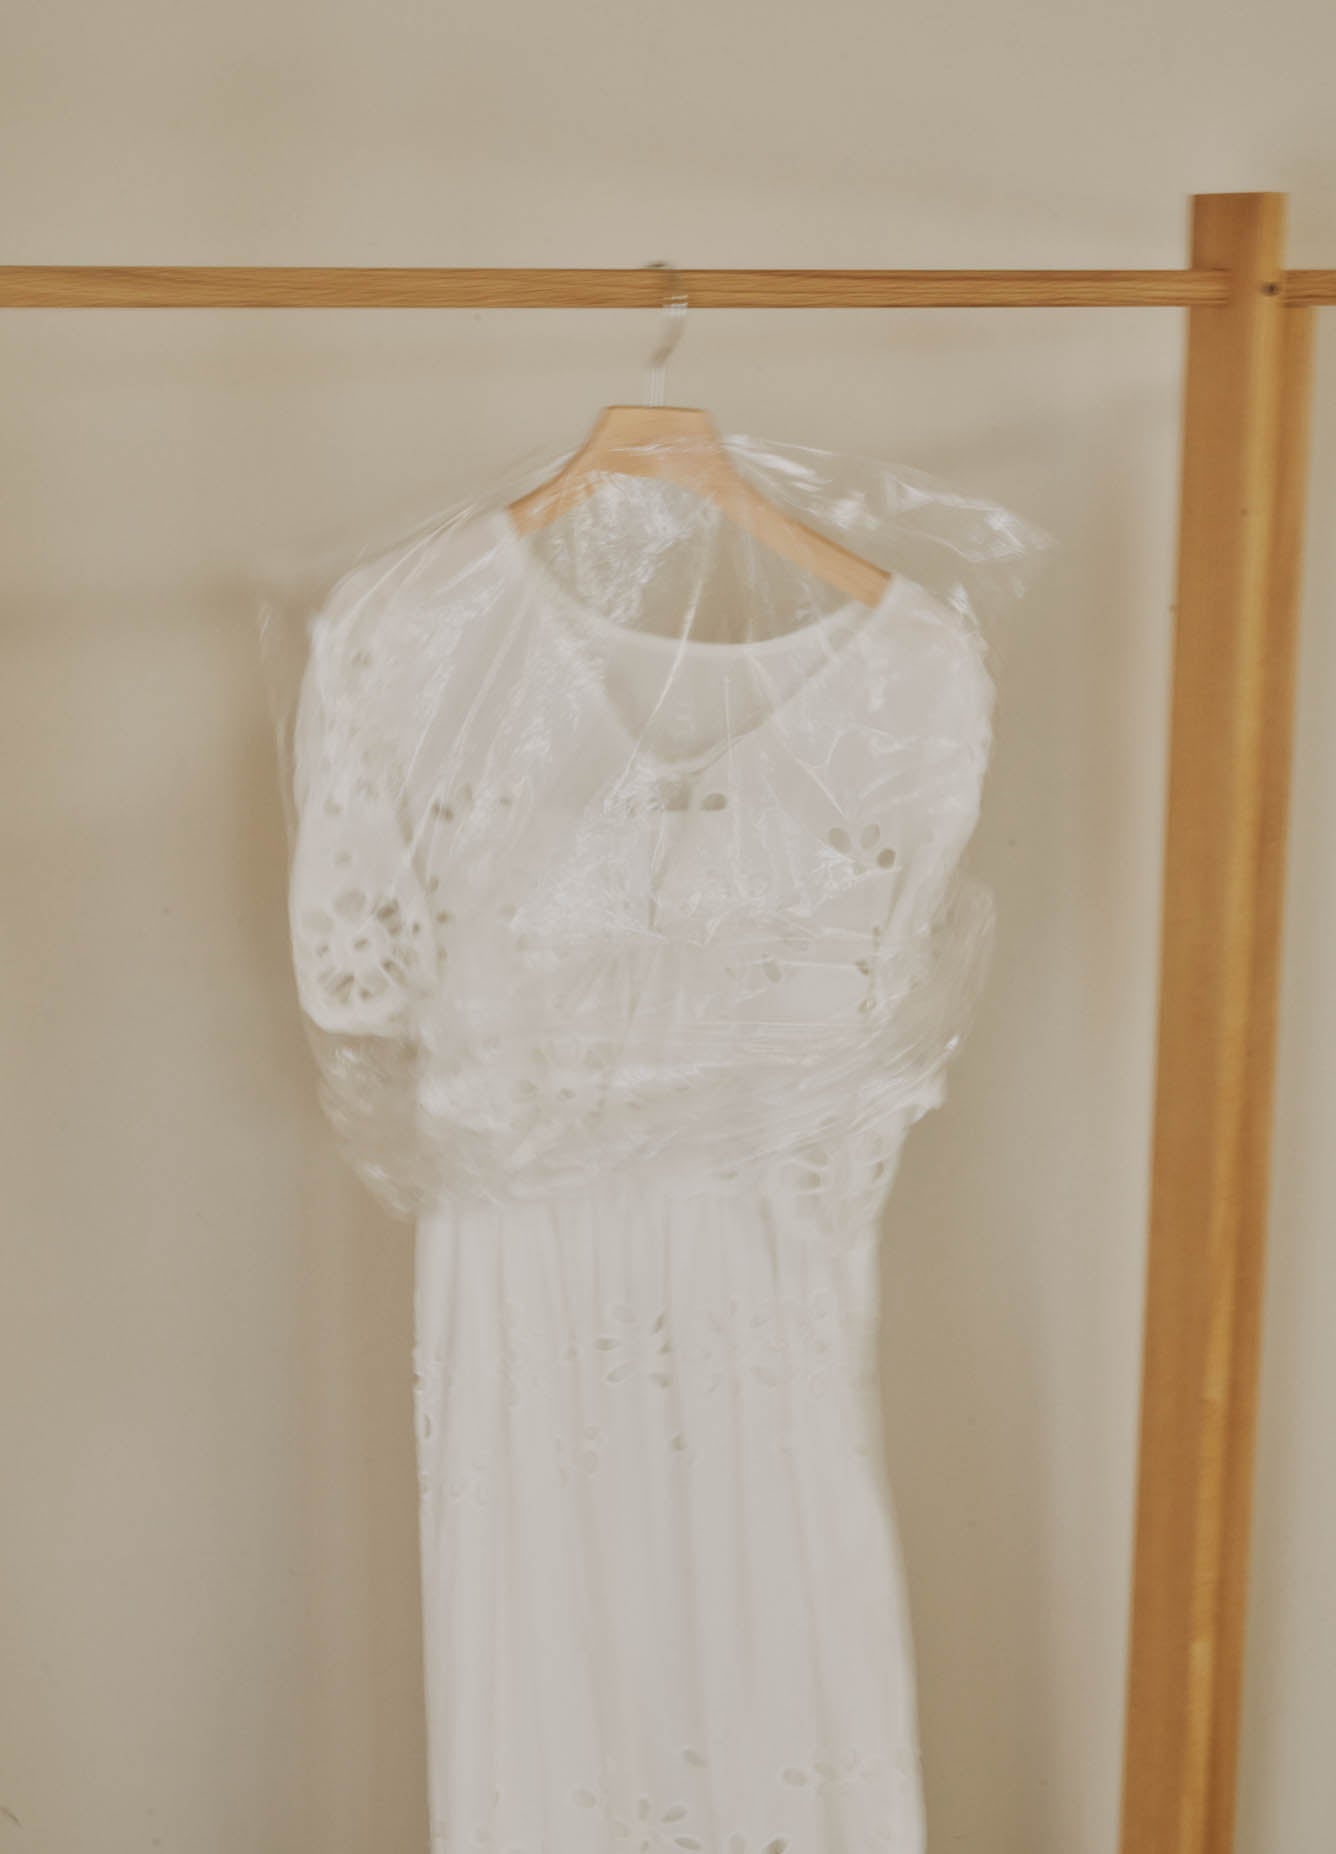 flower lace cami set dress